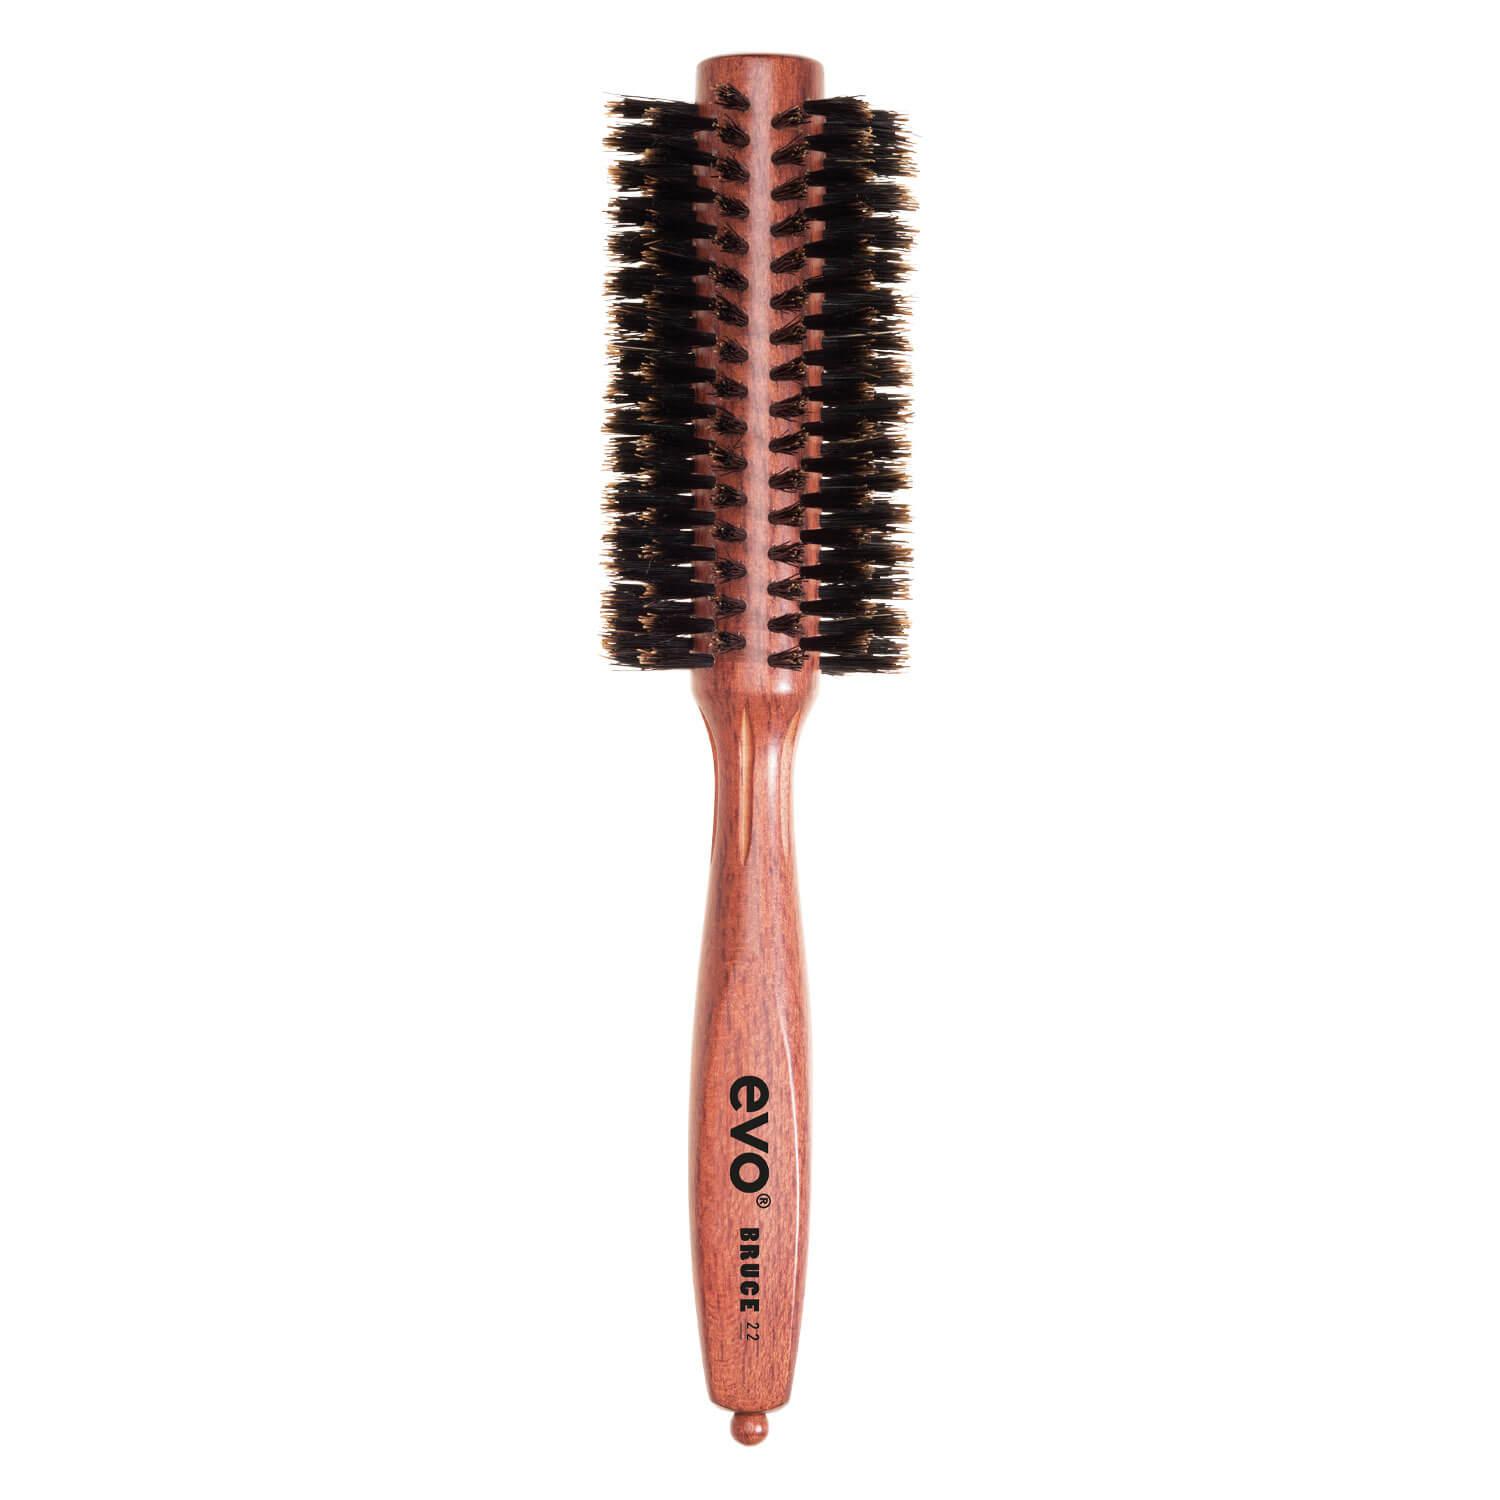 evo brushes - bruce bristle radial brush